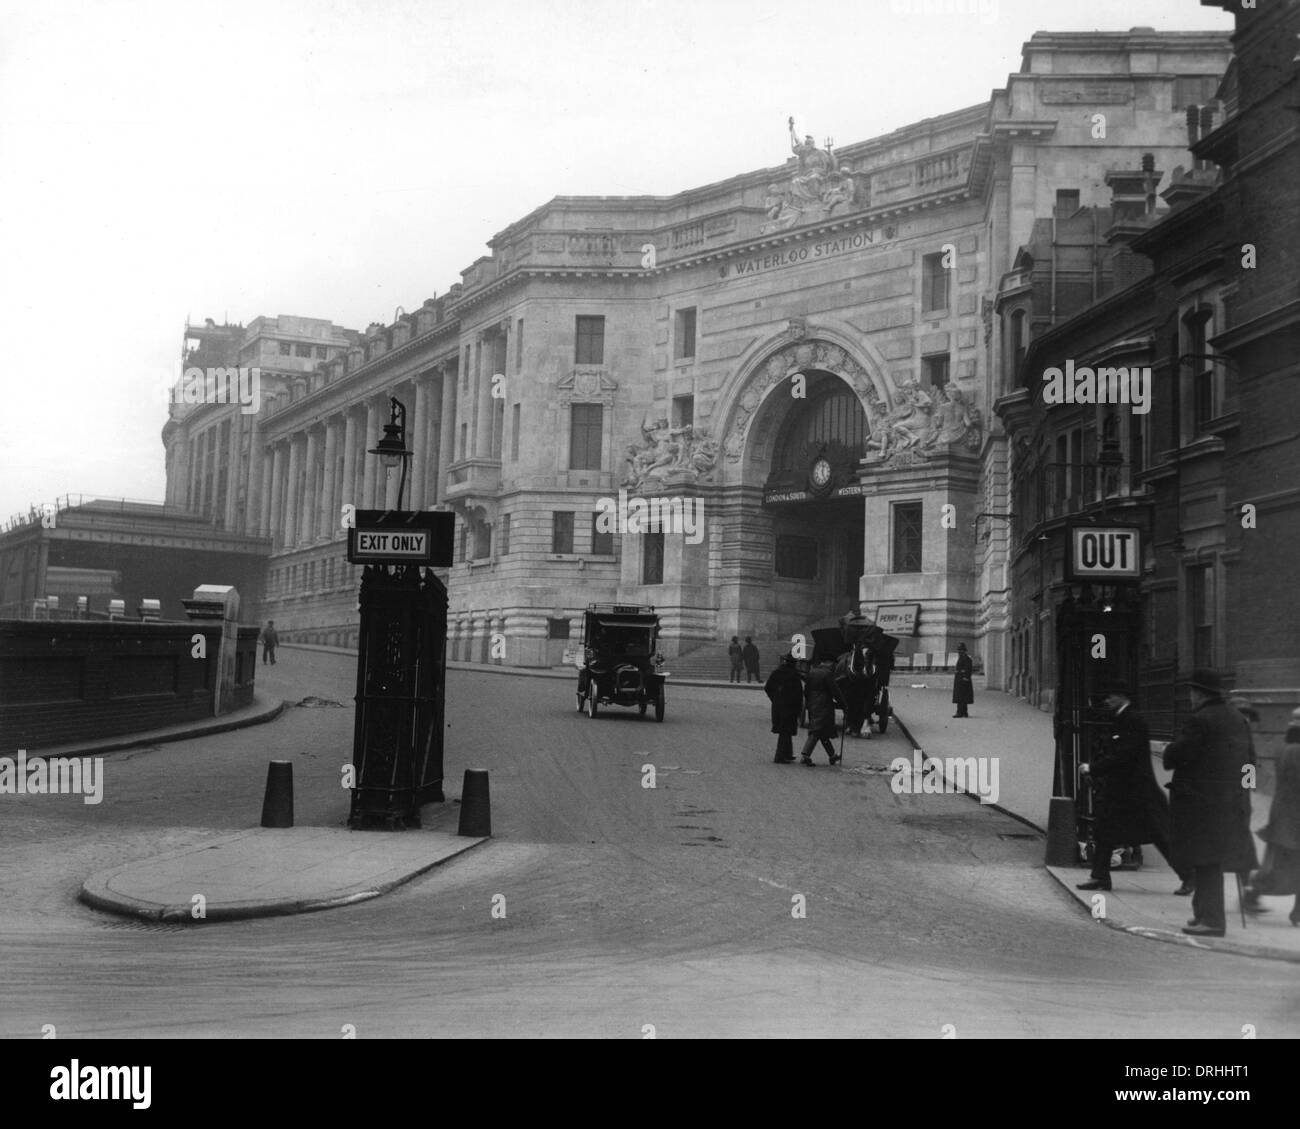 L'entrée de la gare de Waterloo, Londres Banque D'Images